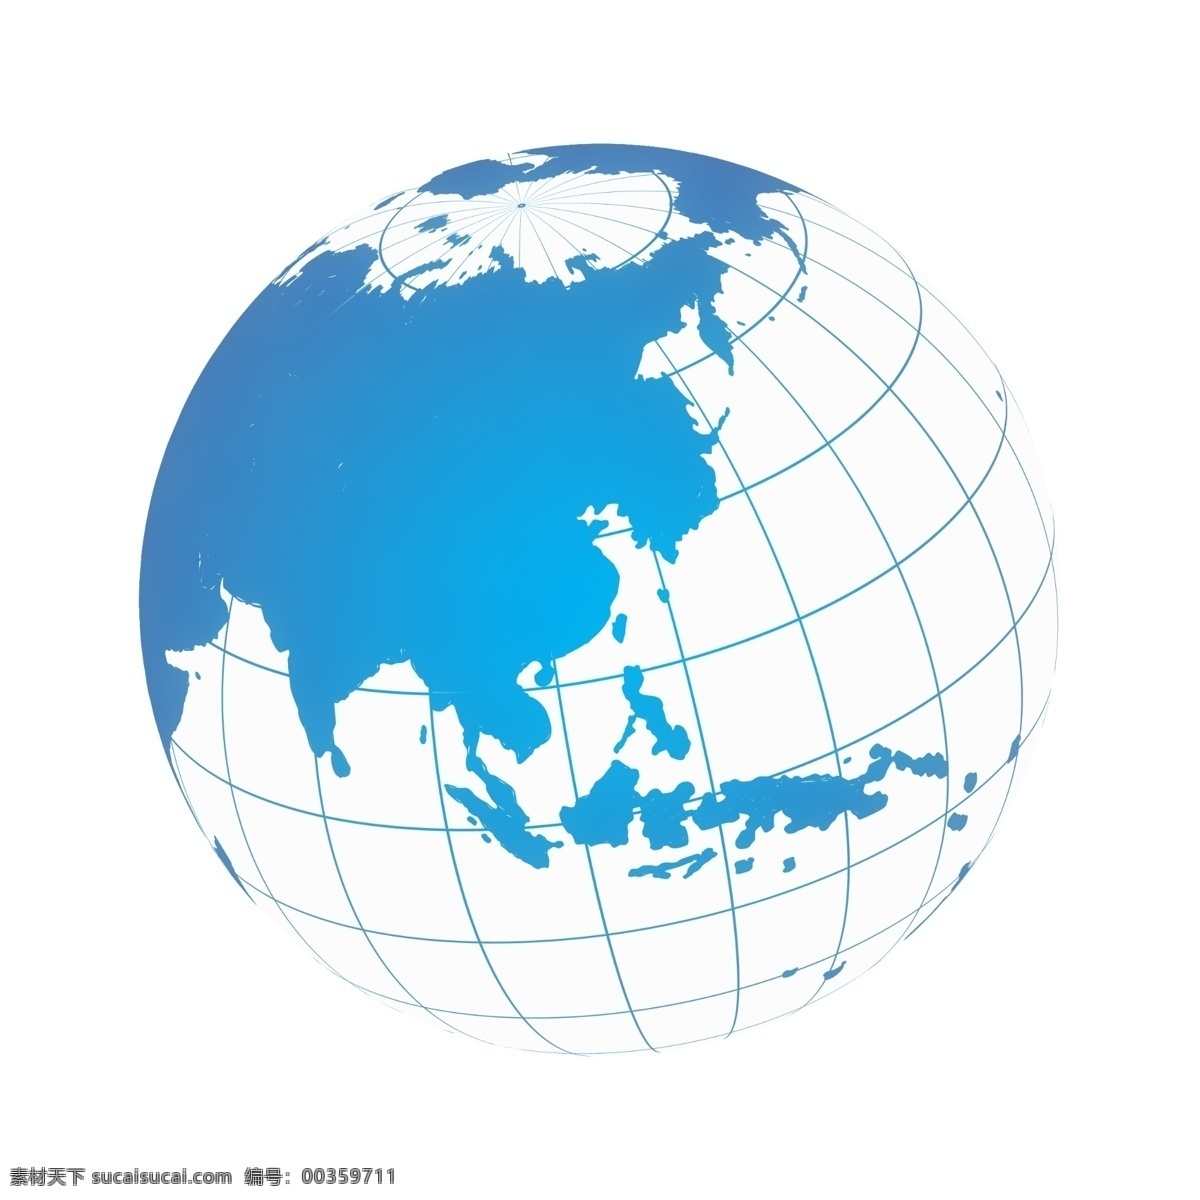 蓝色地球图片 新闻媒体 蓝色星球 世界 全球 国际 地球 星球 环球 球体 花纹 背景 免 抠 图